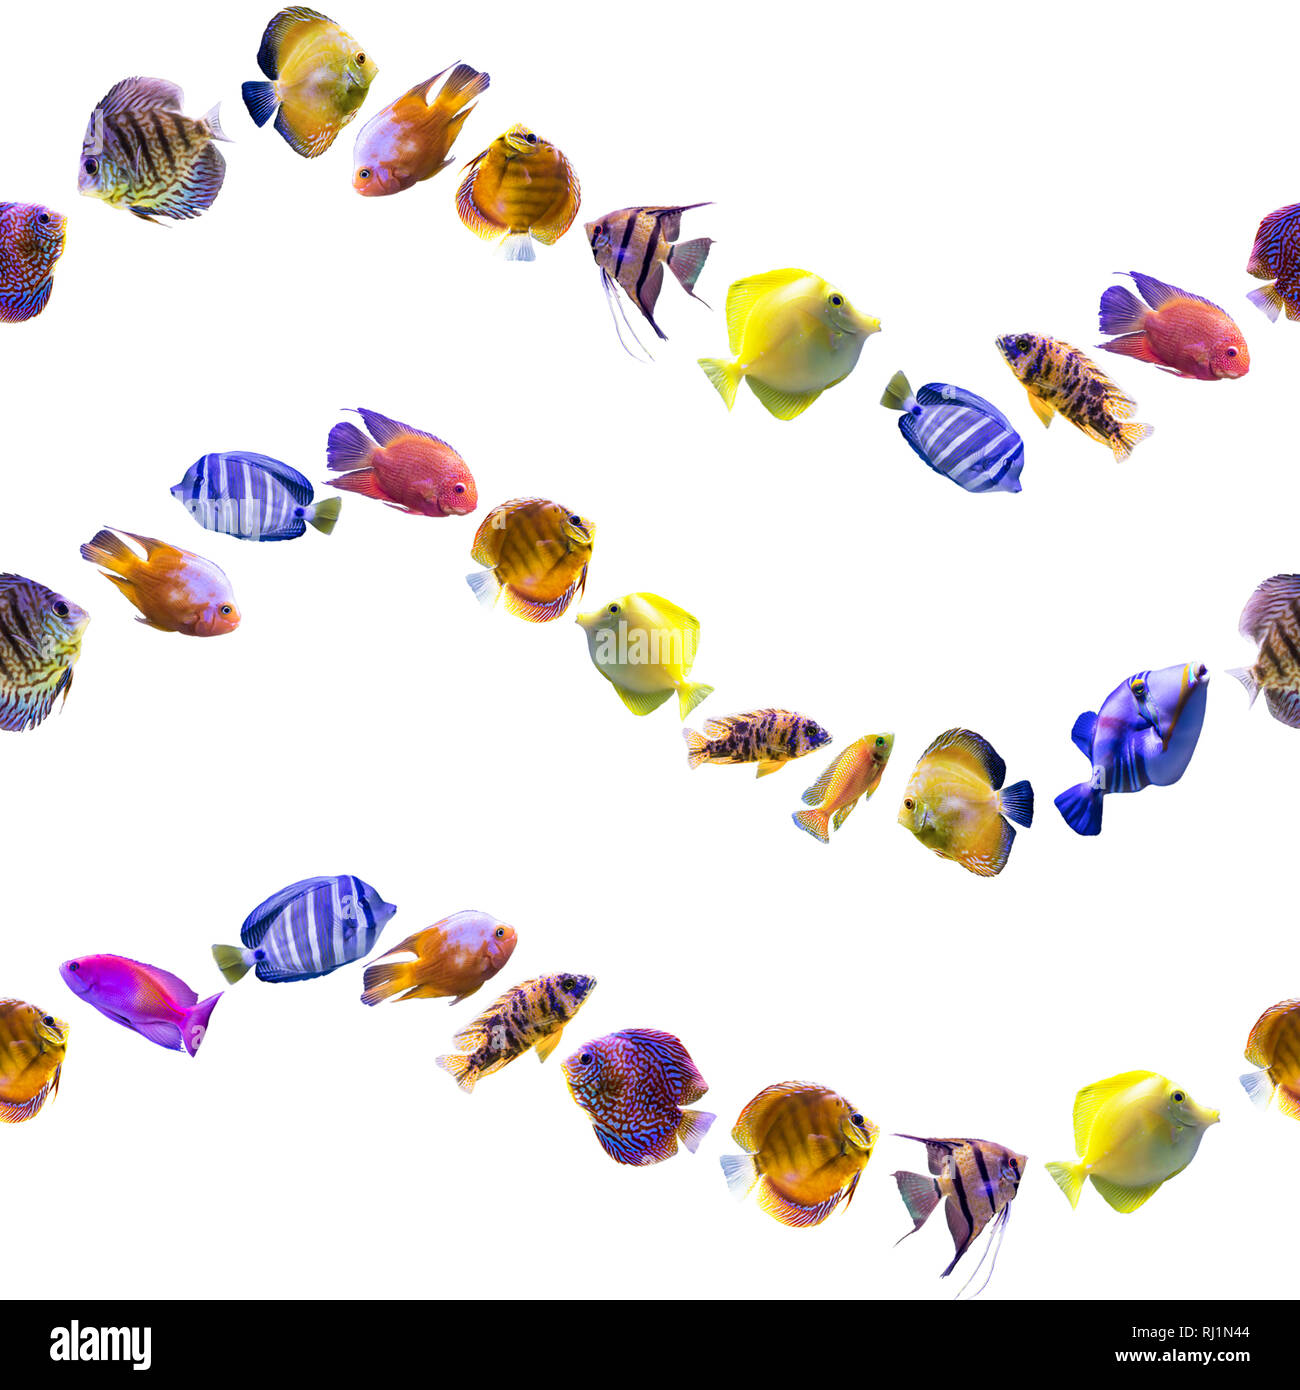 Wellenförmige nahtlose Muster. Bunten Fischen auf einem weißen Hintergrund. Über Natur, Kunst, Tiere, Meer, Fisch. Stockfoto